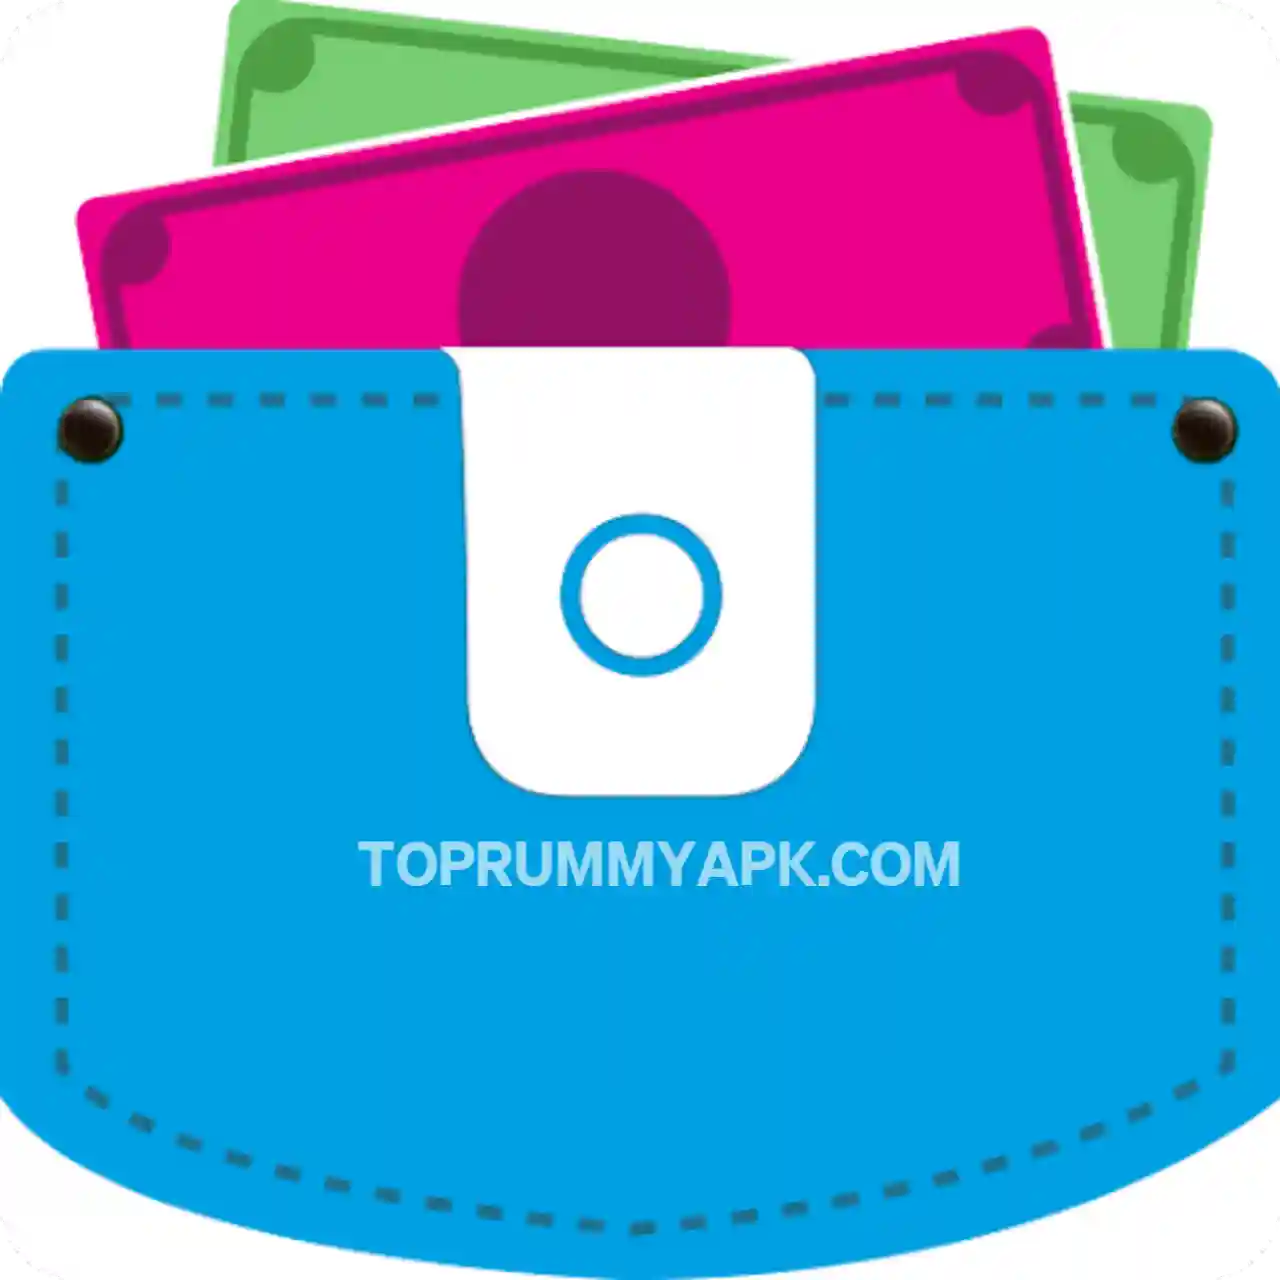 Pocket Money Apk Download - Top Rummy App